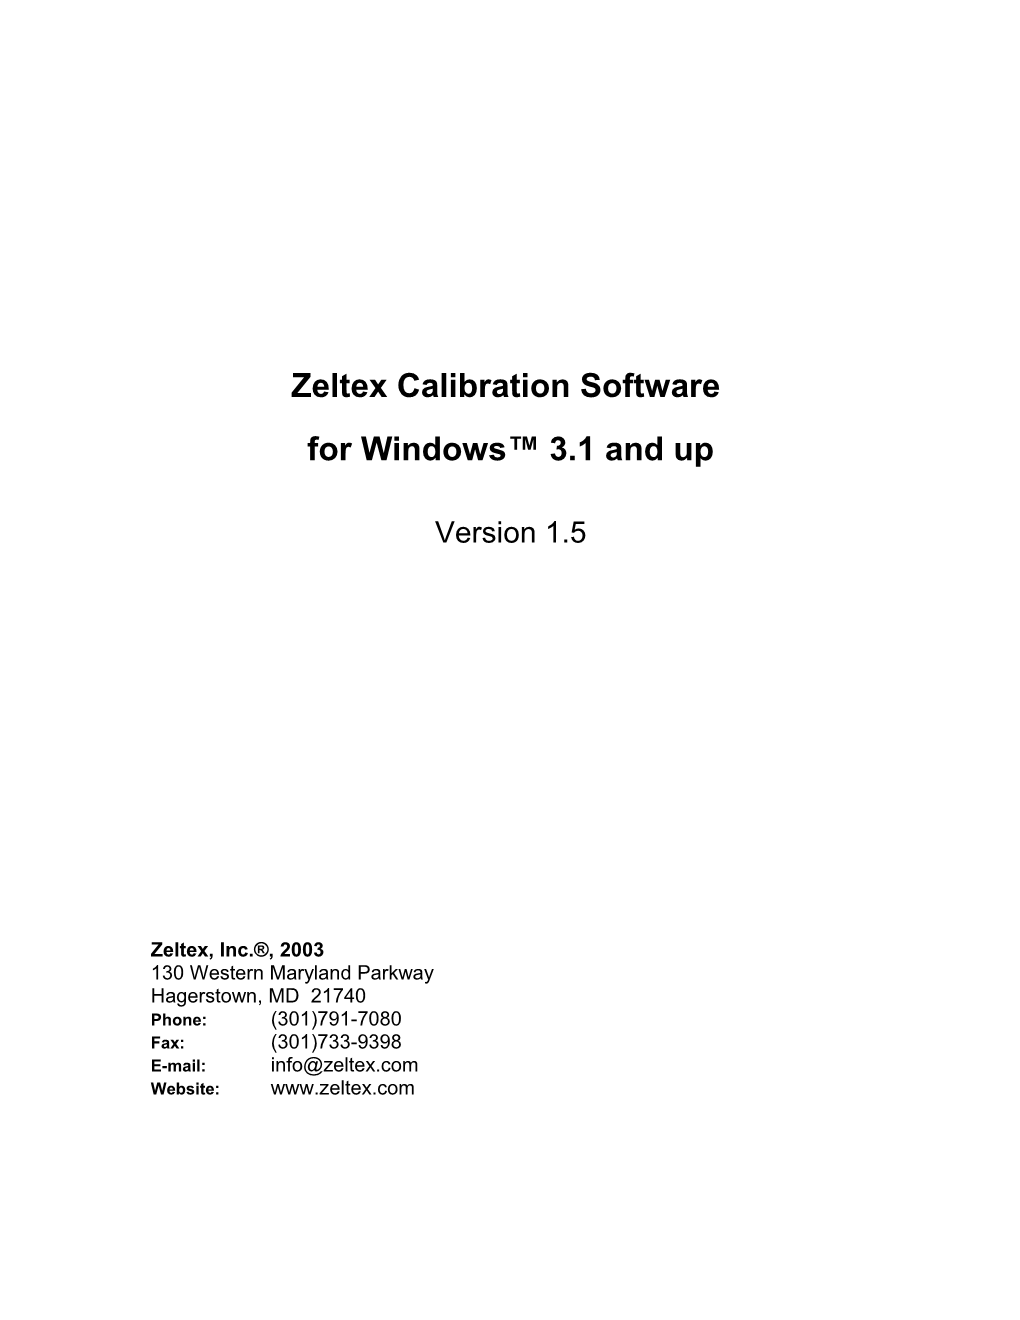 Zeltex Calibration Software for Windows